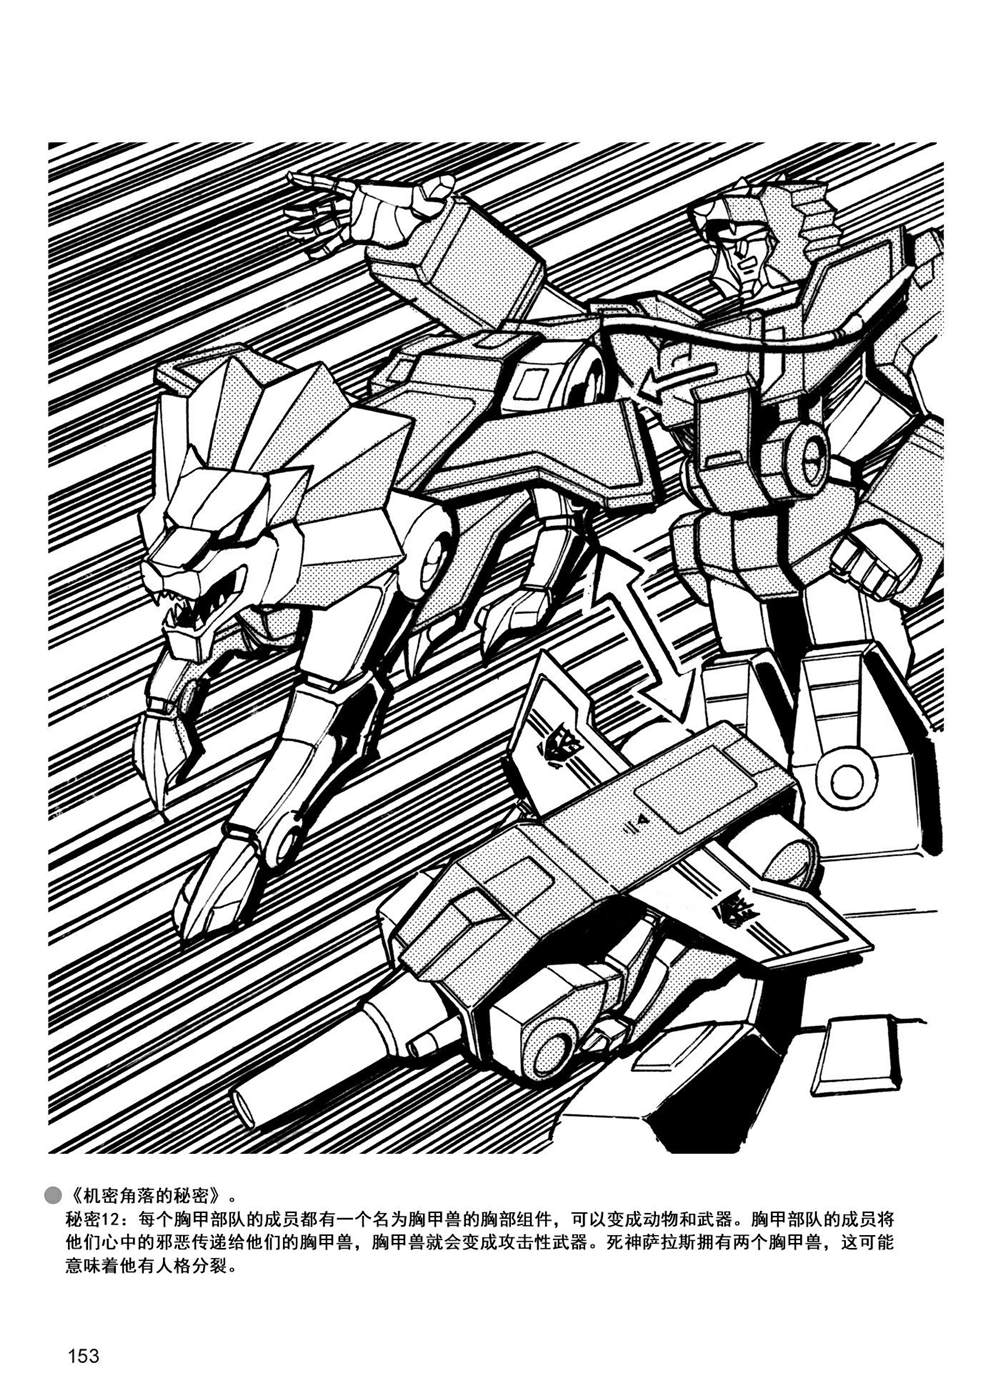 變形金剛日版G1雜誌插畫 - 戰鬥吧！超機械生命體變形金剛：勝利之鬥爭 - 3